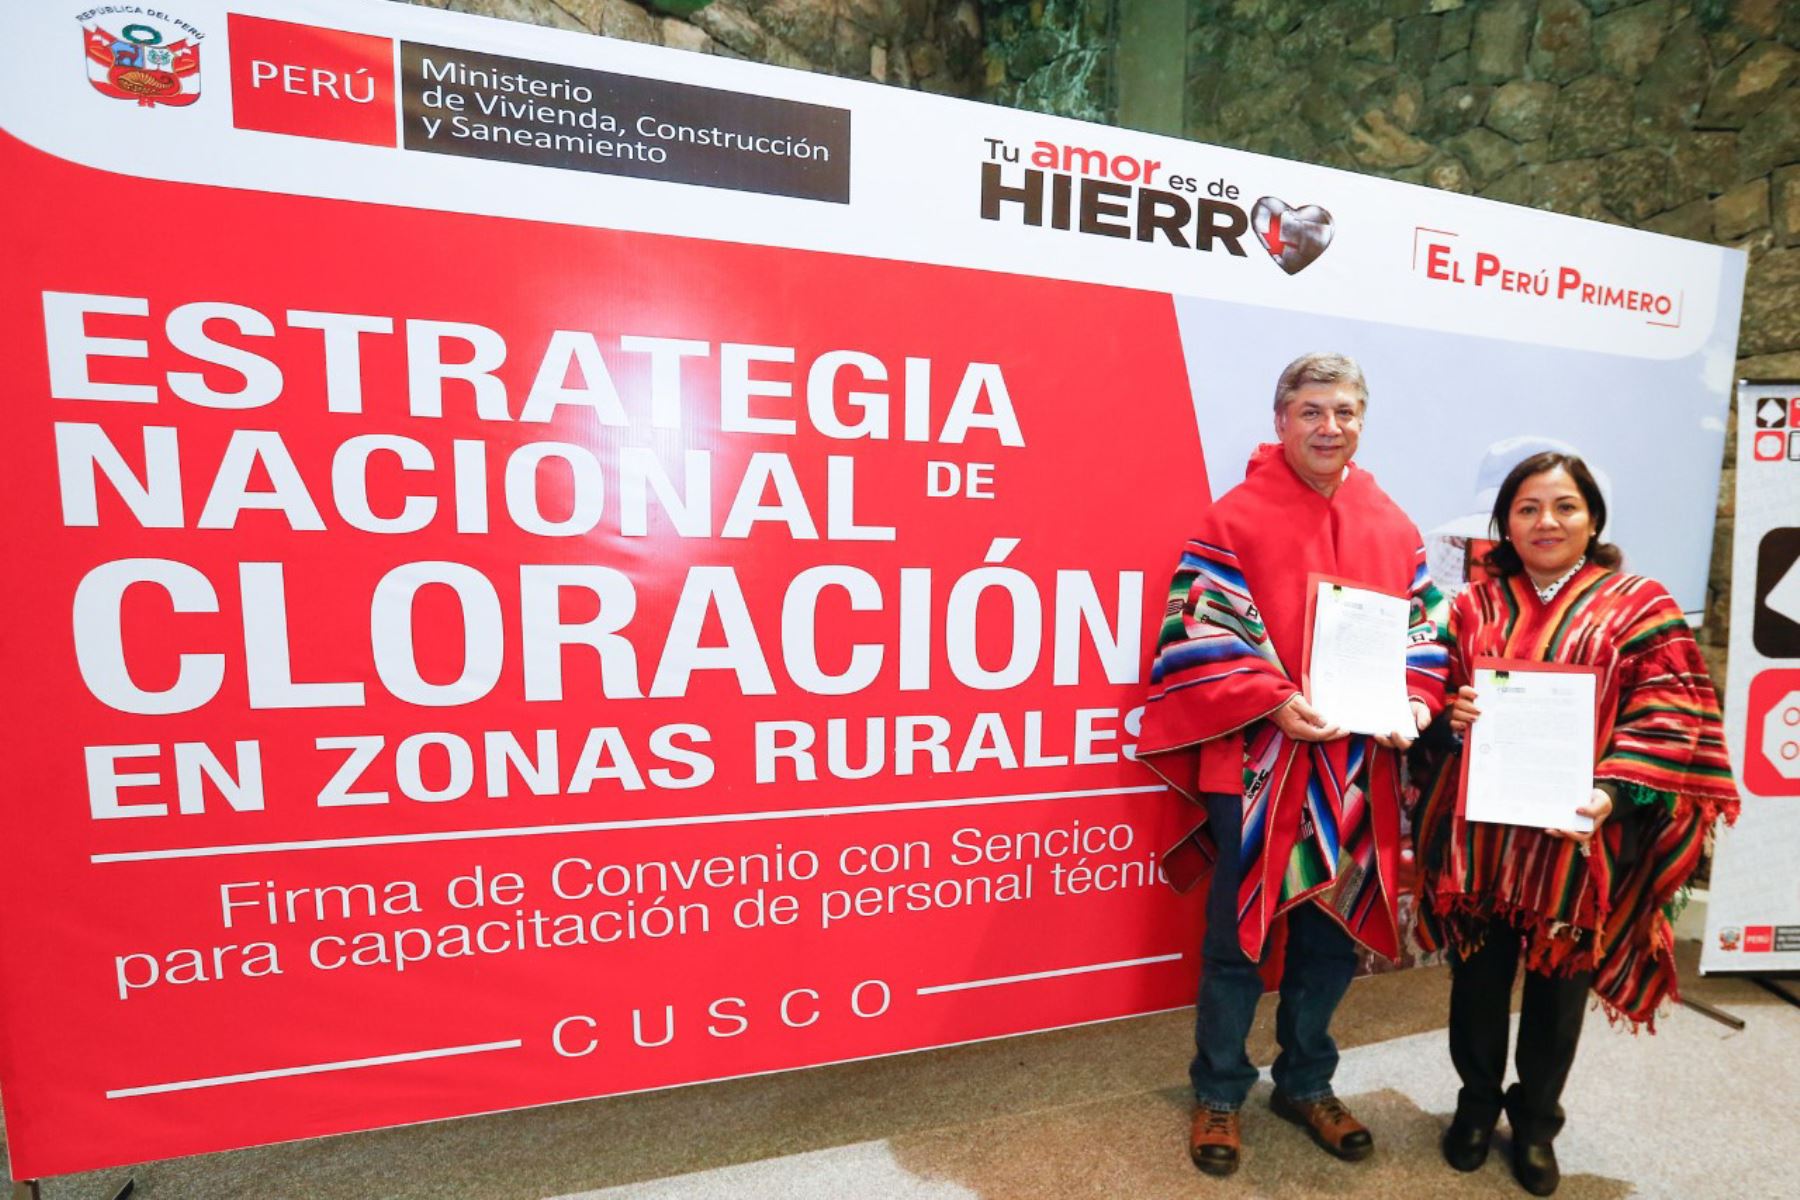 El ministro de Vivienda, Construcción y Saneamiento, Miguel Estrada, lanzó la estrategia para incrementar el porcentaje de hogares con acceso a agua clorada en zonas rurales del Perú.